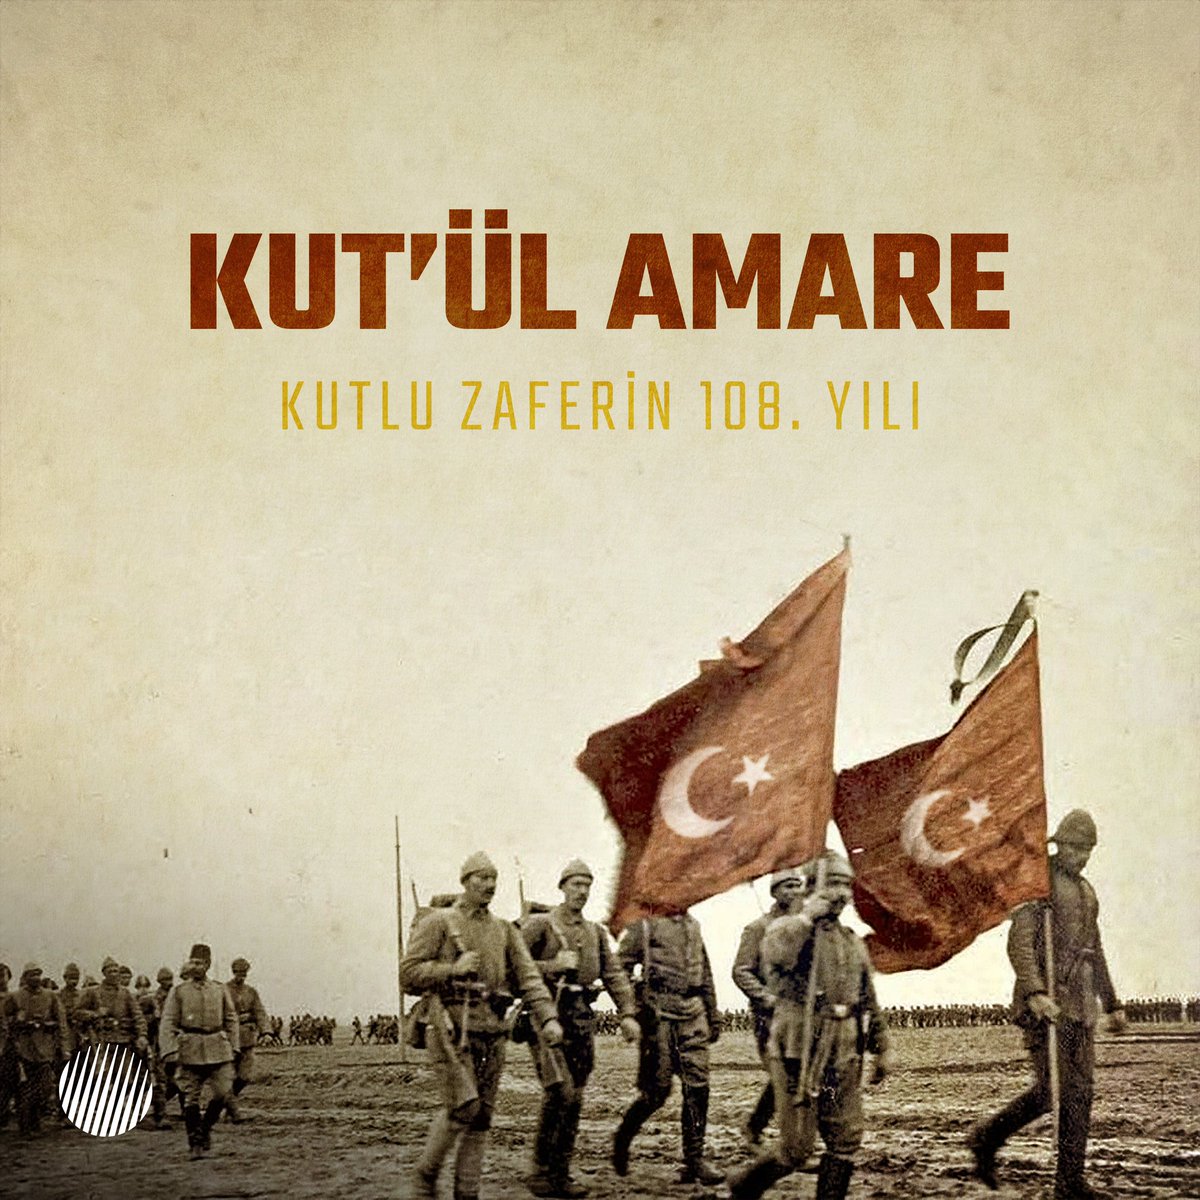 Şanlı ecdadımızın destansı mücadelesini tüm dünyaya gösteren Türk tarihinin büyük zaferi #KutülAmare'nin 108. yılında, aziz şehitlerimizi minnet ve rahmetle anıyoruz. #YarınİçinYüksel #Roketsan